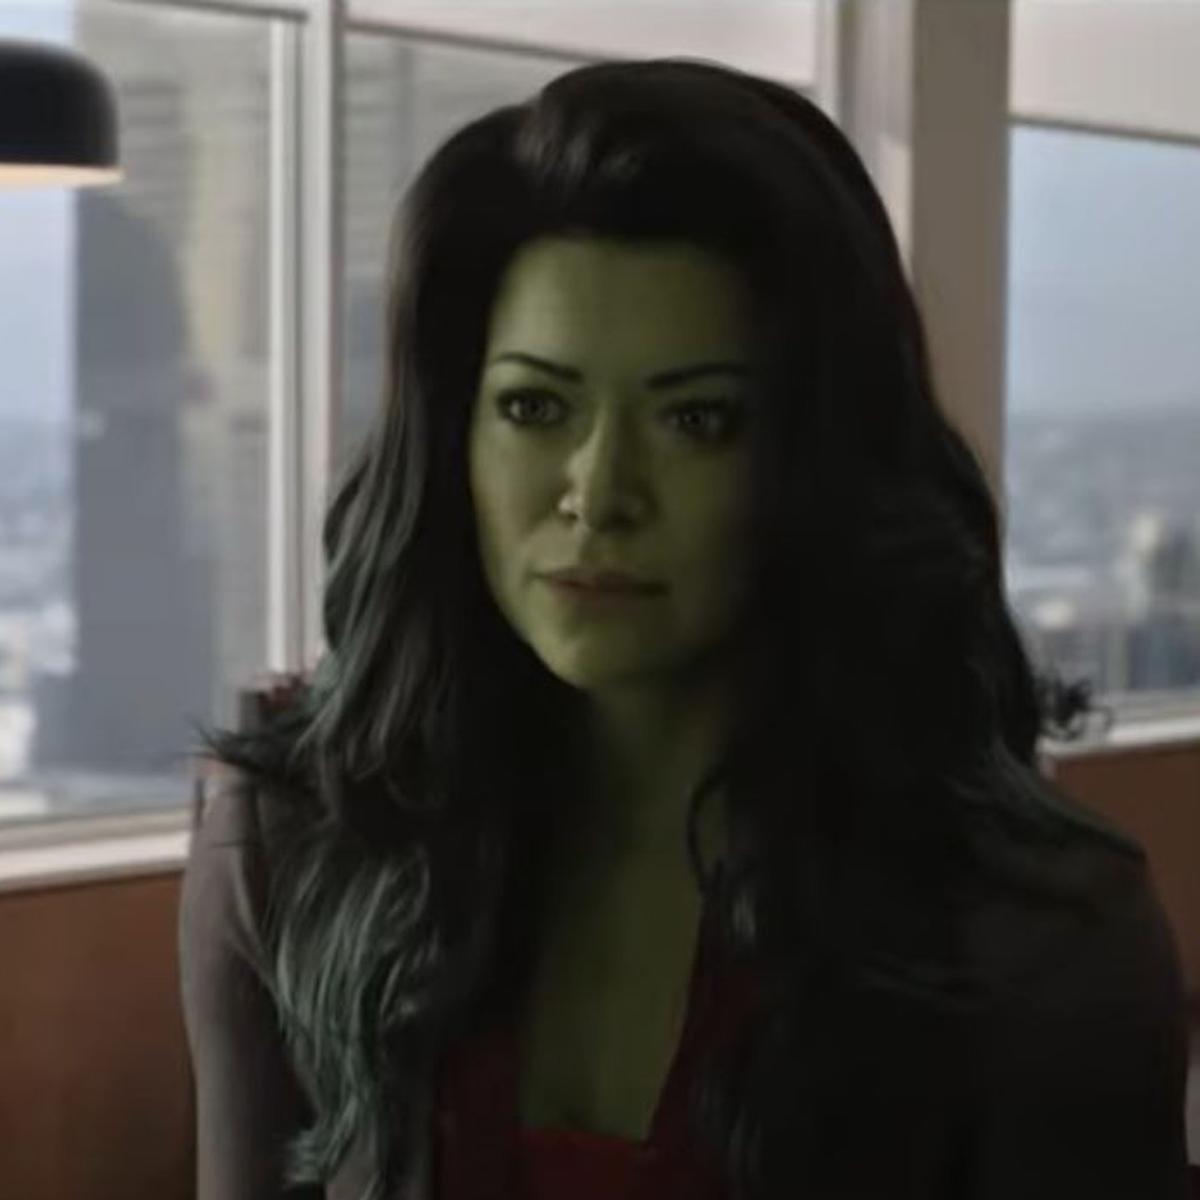 Mulher-Hulk: Marvel divulga novo trailer na Comic Con; Demolidor estará na  série - Notícias Série - como visto na Web - AdoroCinema